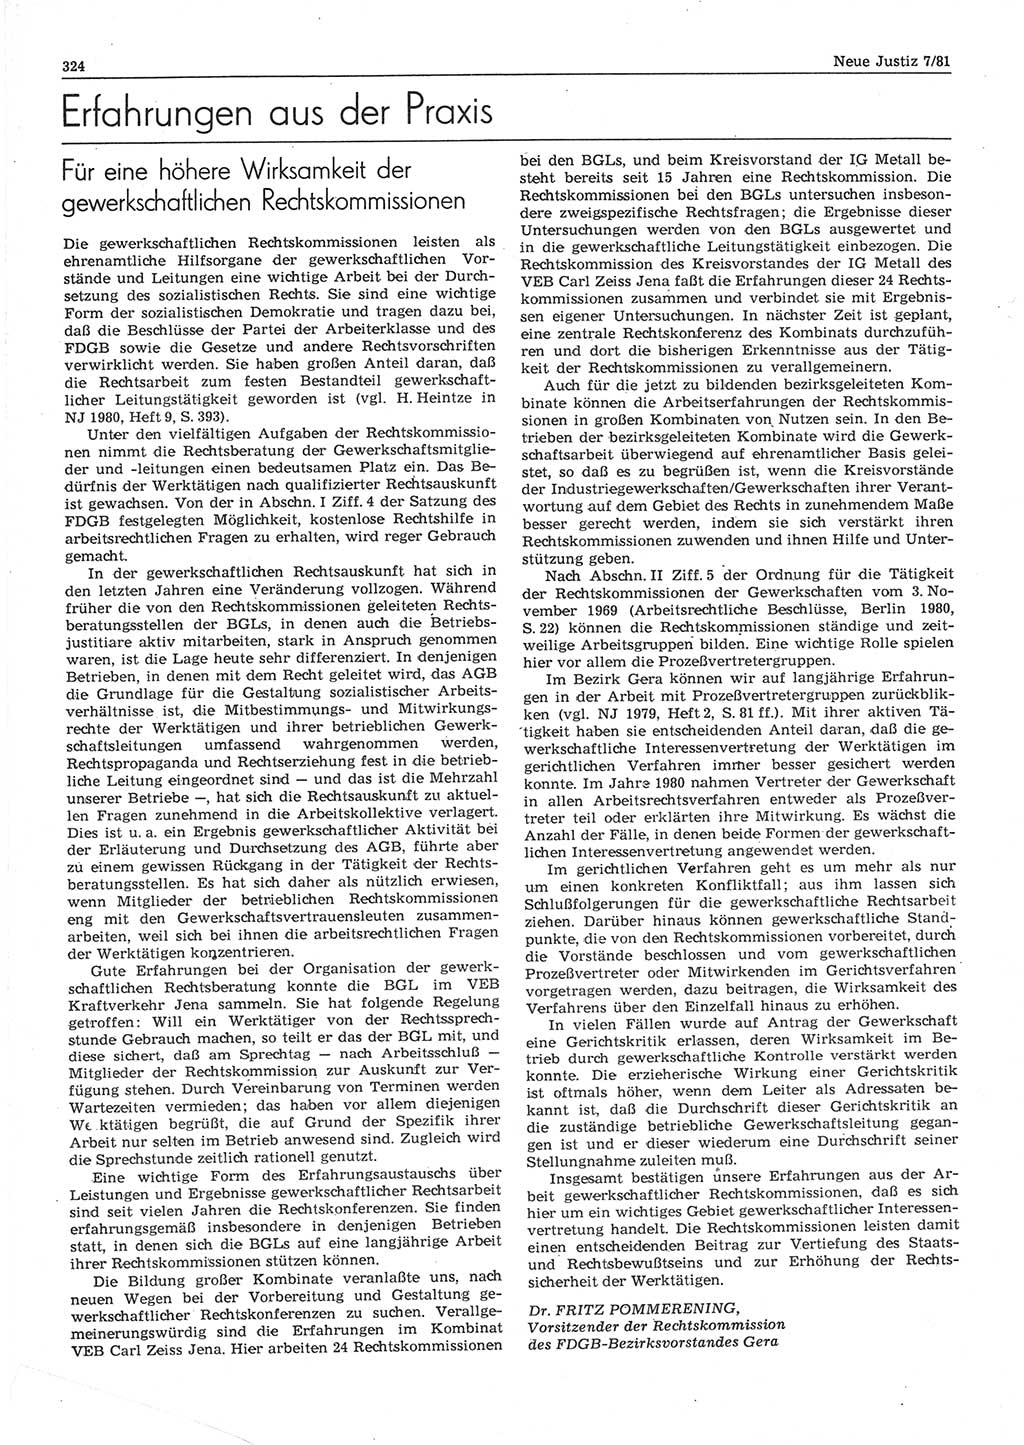 Neue Justiz (NJ), Zeitschrift für sozialistisches Recht und Gesetzlichkeit [Deutsche Demokratische Republik (DDR)], 35. Jahrgang 1981, Seite 324 (NJ DDR 1981, S. 324)